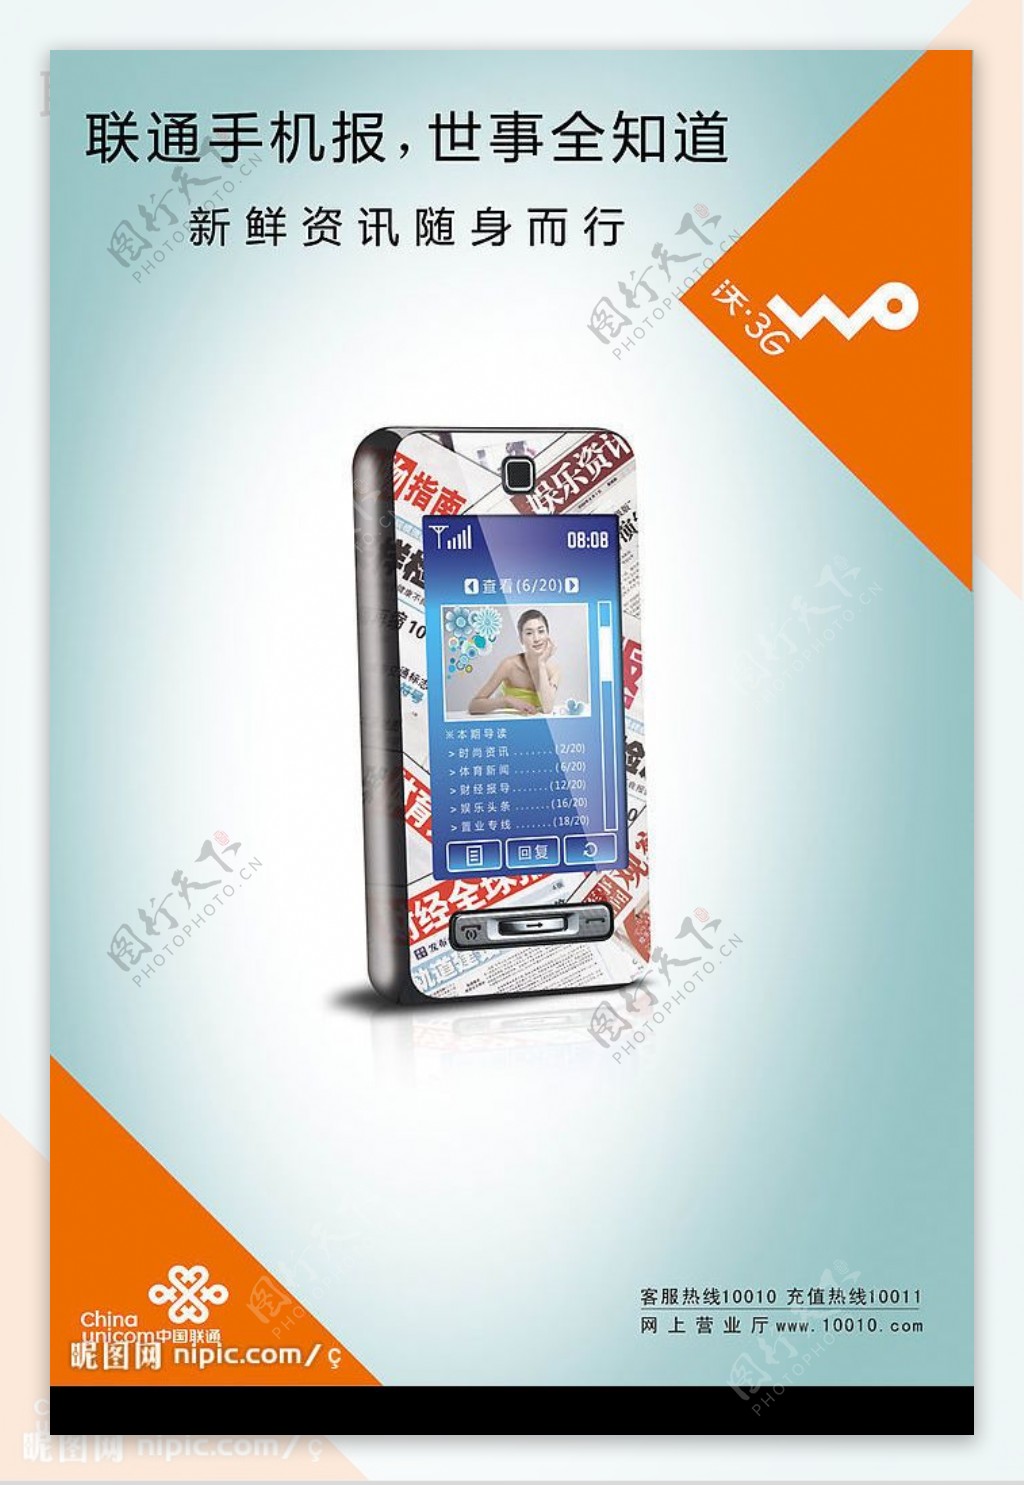 联通沃3G手机海报图片